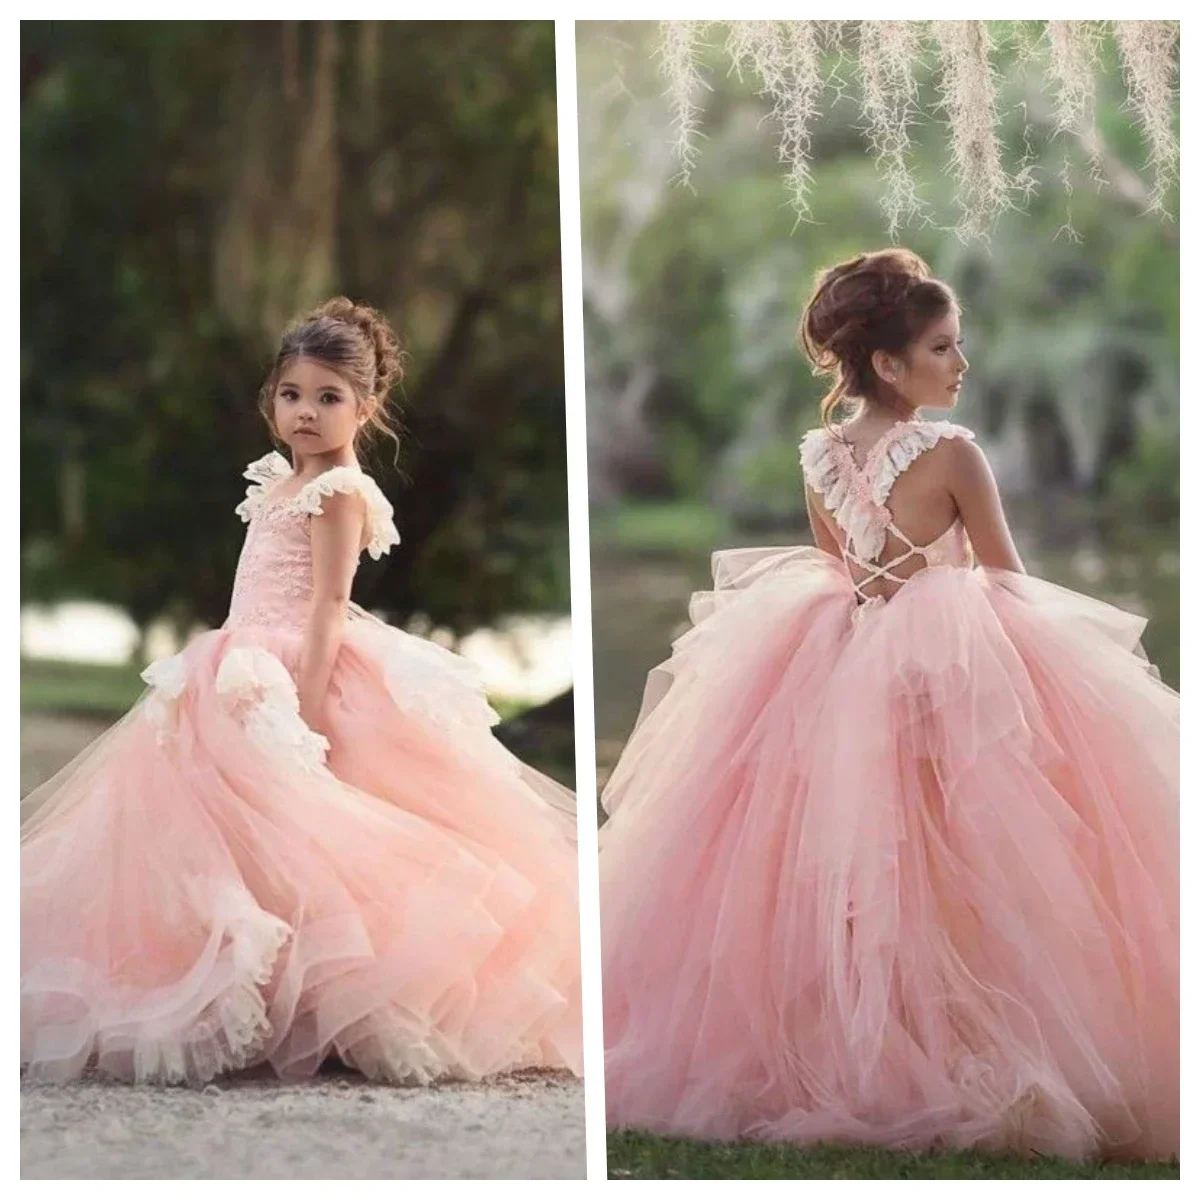 

Детское платье с кружевной аппликацией, многослойное розовое платье из фатина с цветочным принтом для девочек на свадьбу, платье для первого причастия на день рождения, платье для девочек